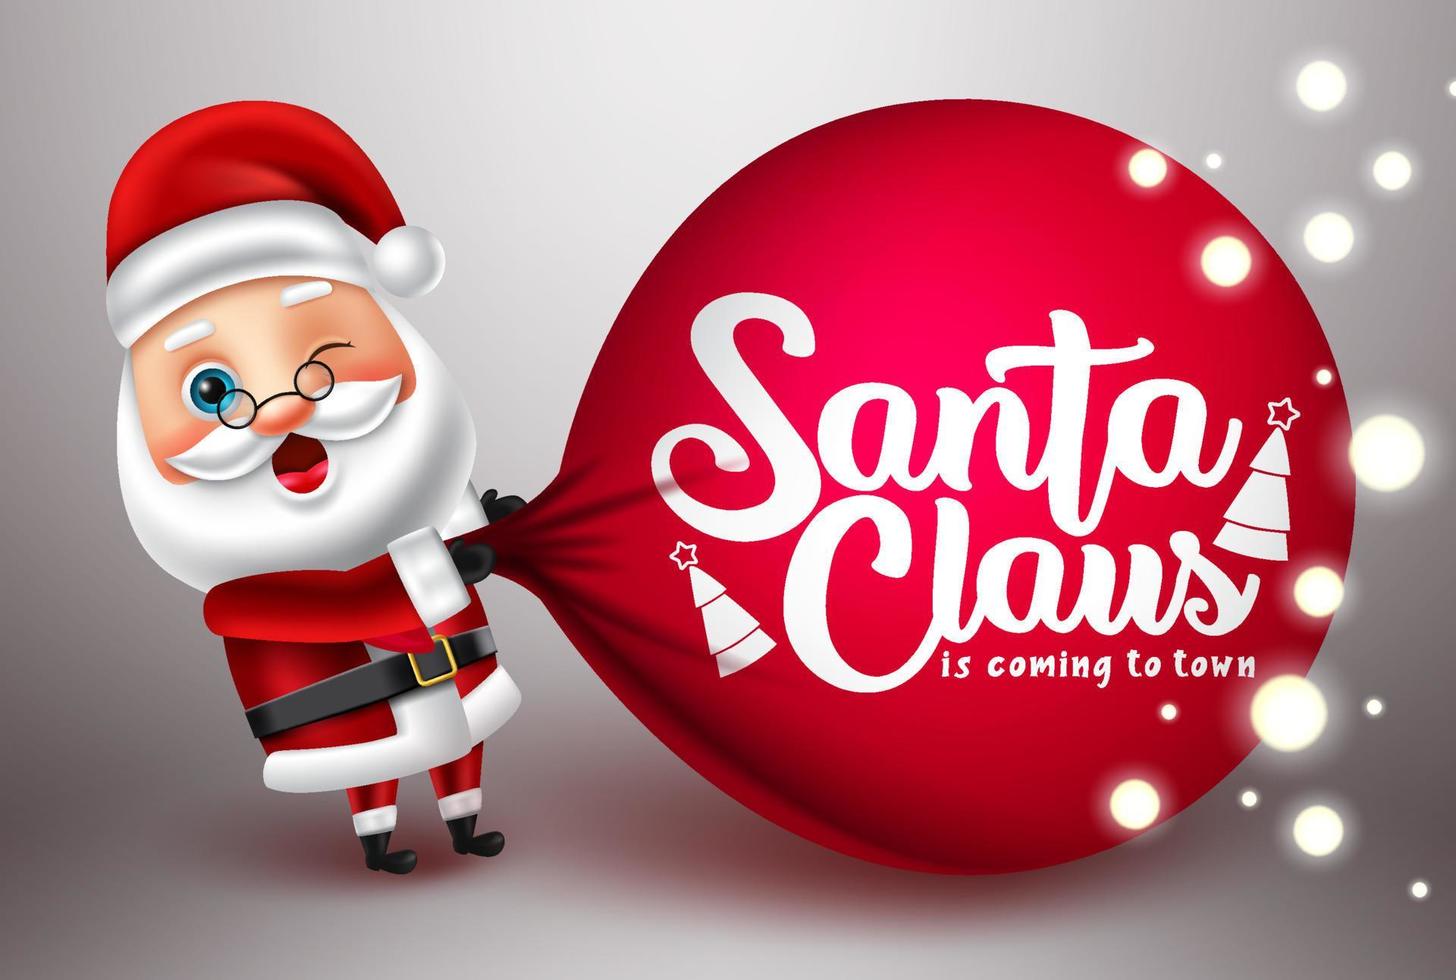 Kerstman vector Characterdesign. kerst santa karakter trekken zak zak element met de kerstman komt naar de stad tekst voor vakantie seizoen achtergrond. vectorillustratie.